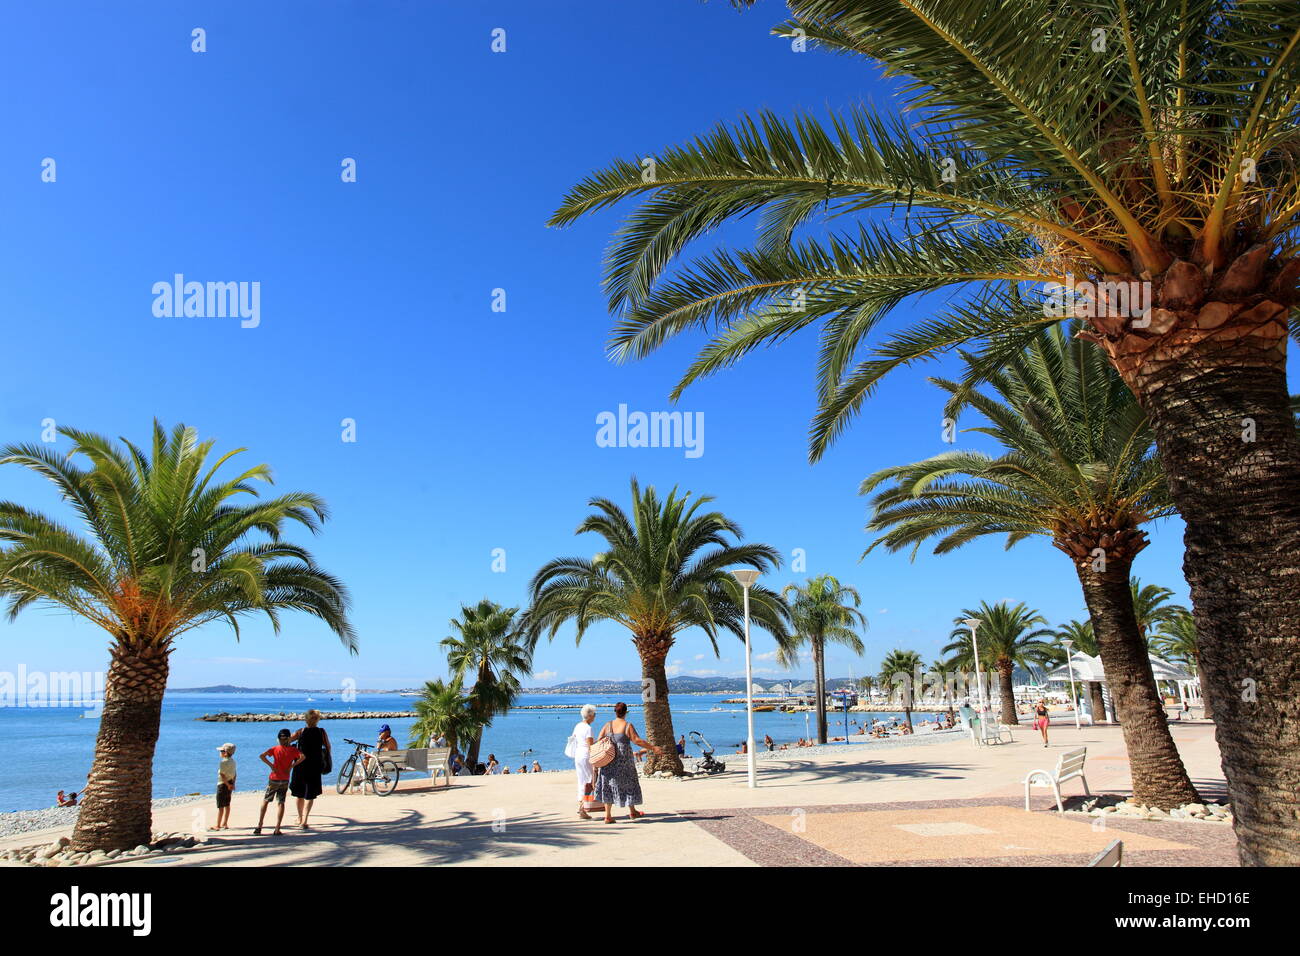 La plage et balnéaire de Saint Laurent du Var sur la côte d'Azur Banque D'Images